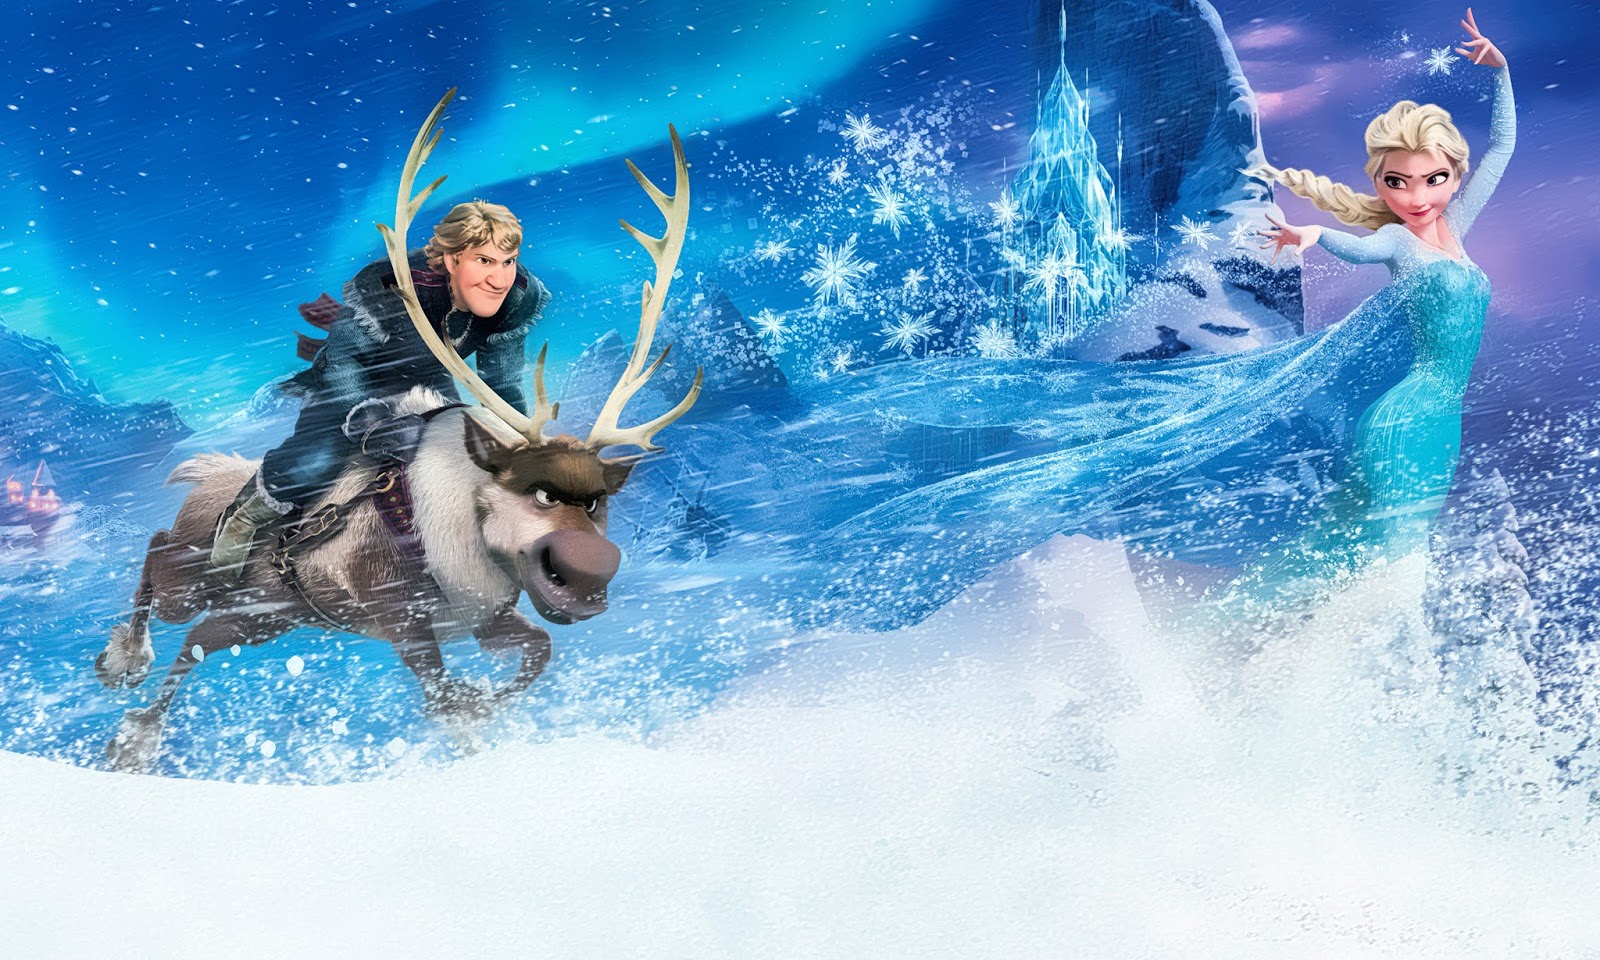 frozen movie wallpaper,reindeer,illustration,fun,deer,fictional character